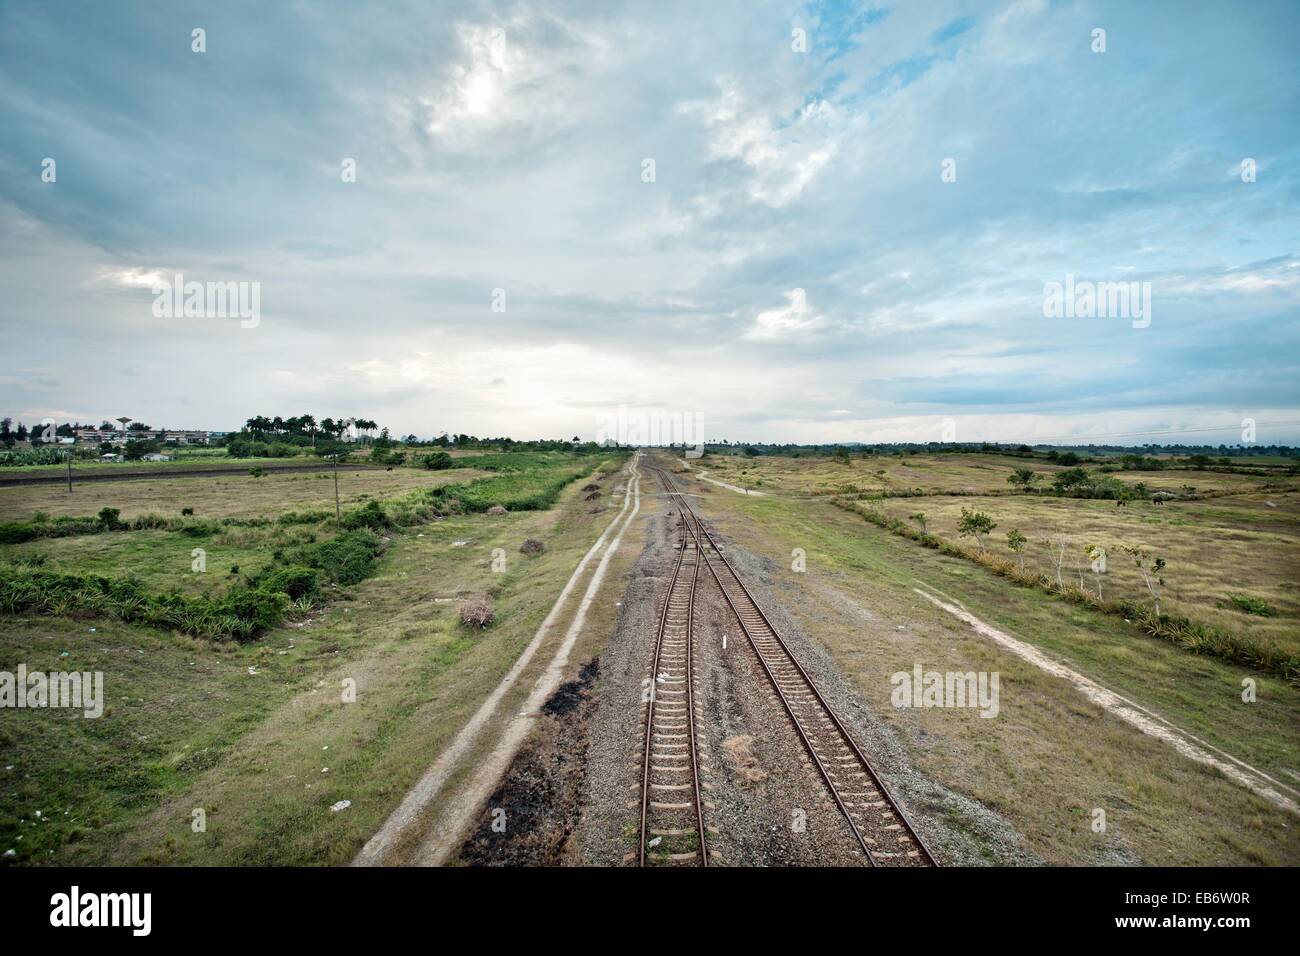 Railroad, Santa Clara, Cuba. Stock Photo